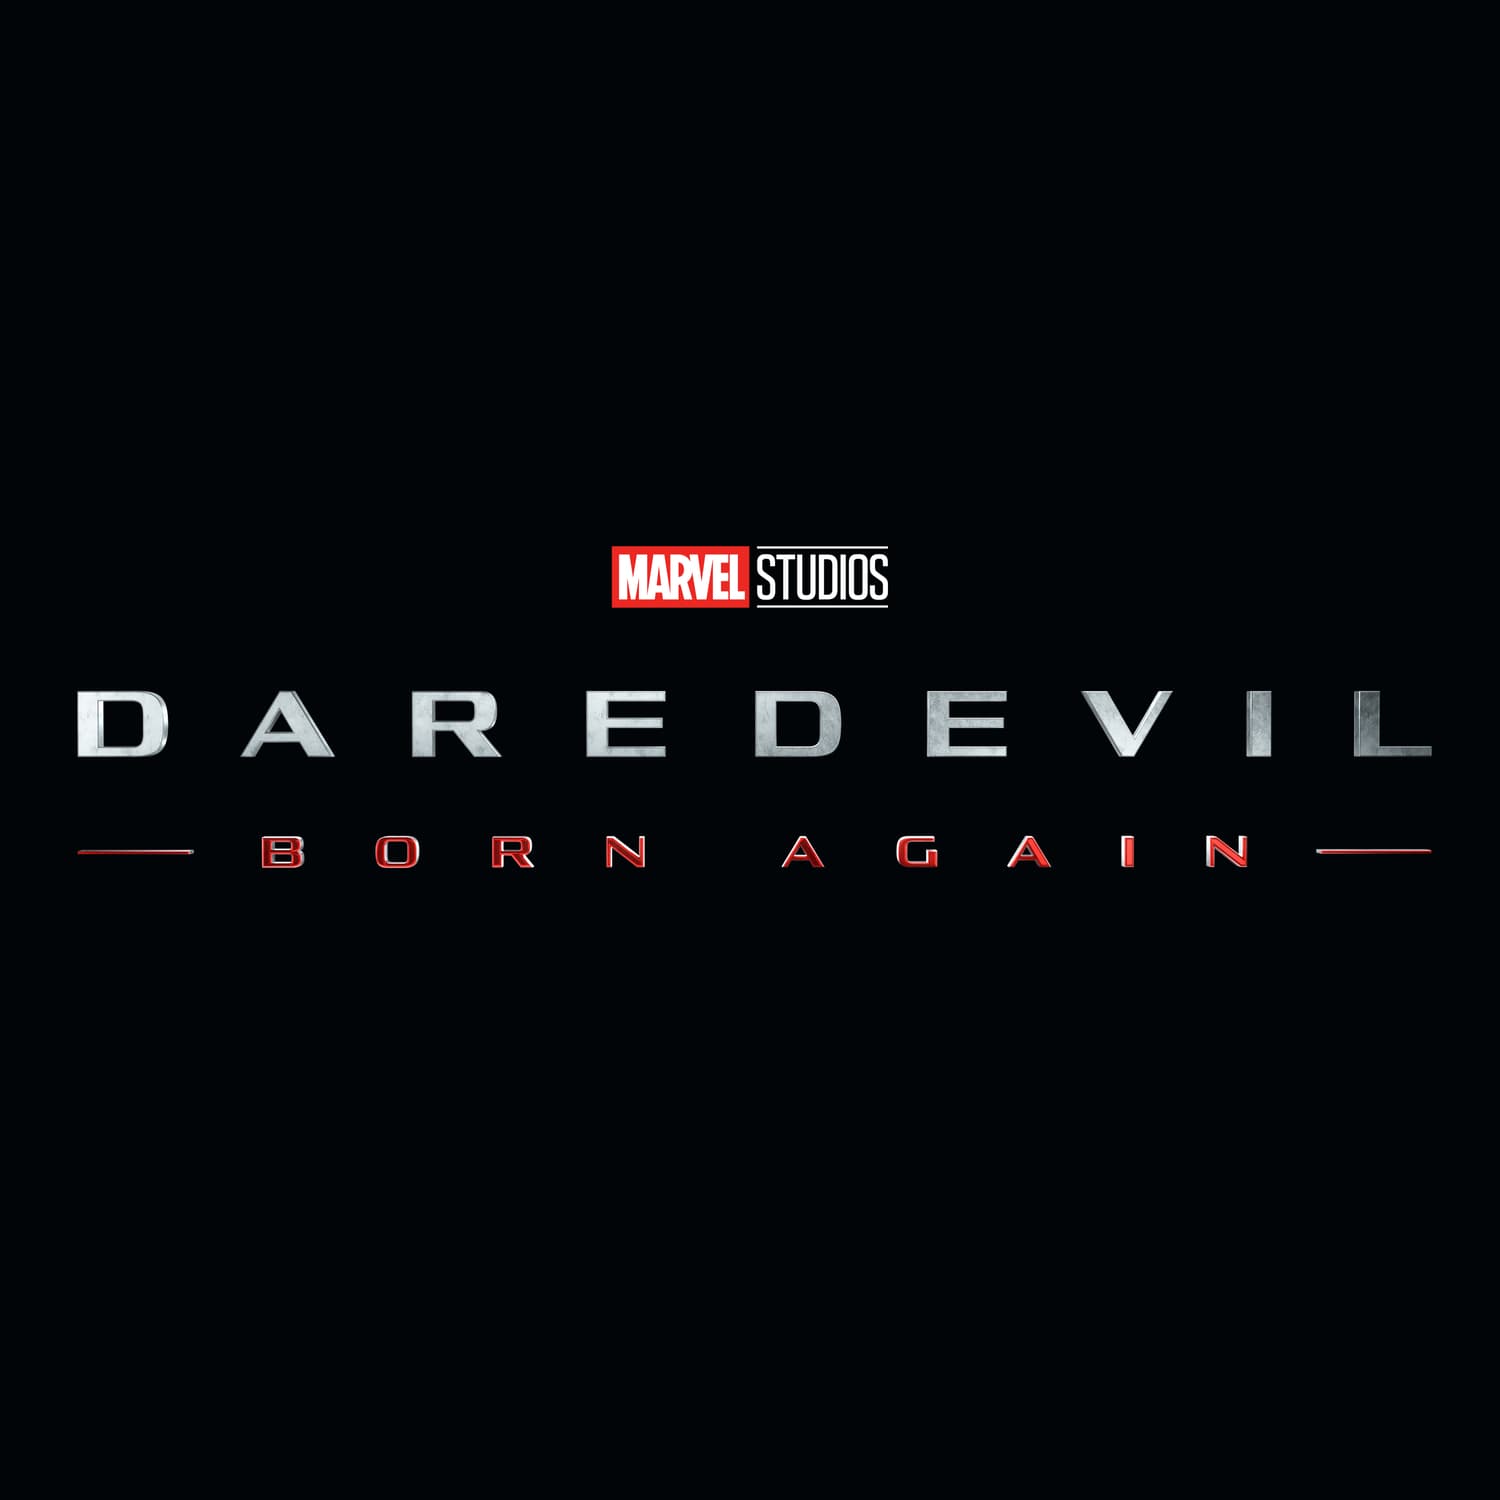 Marvel Studios' Daredevil: Born Again